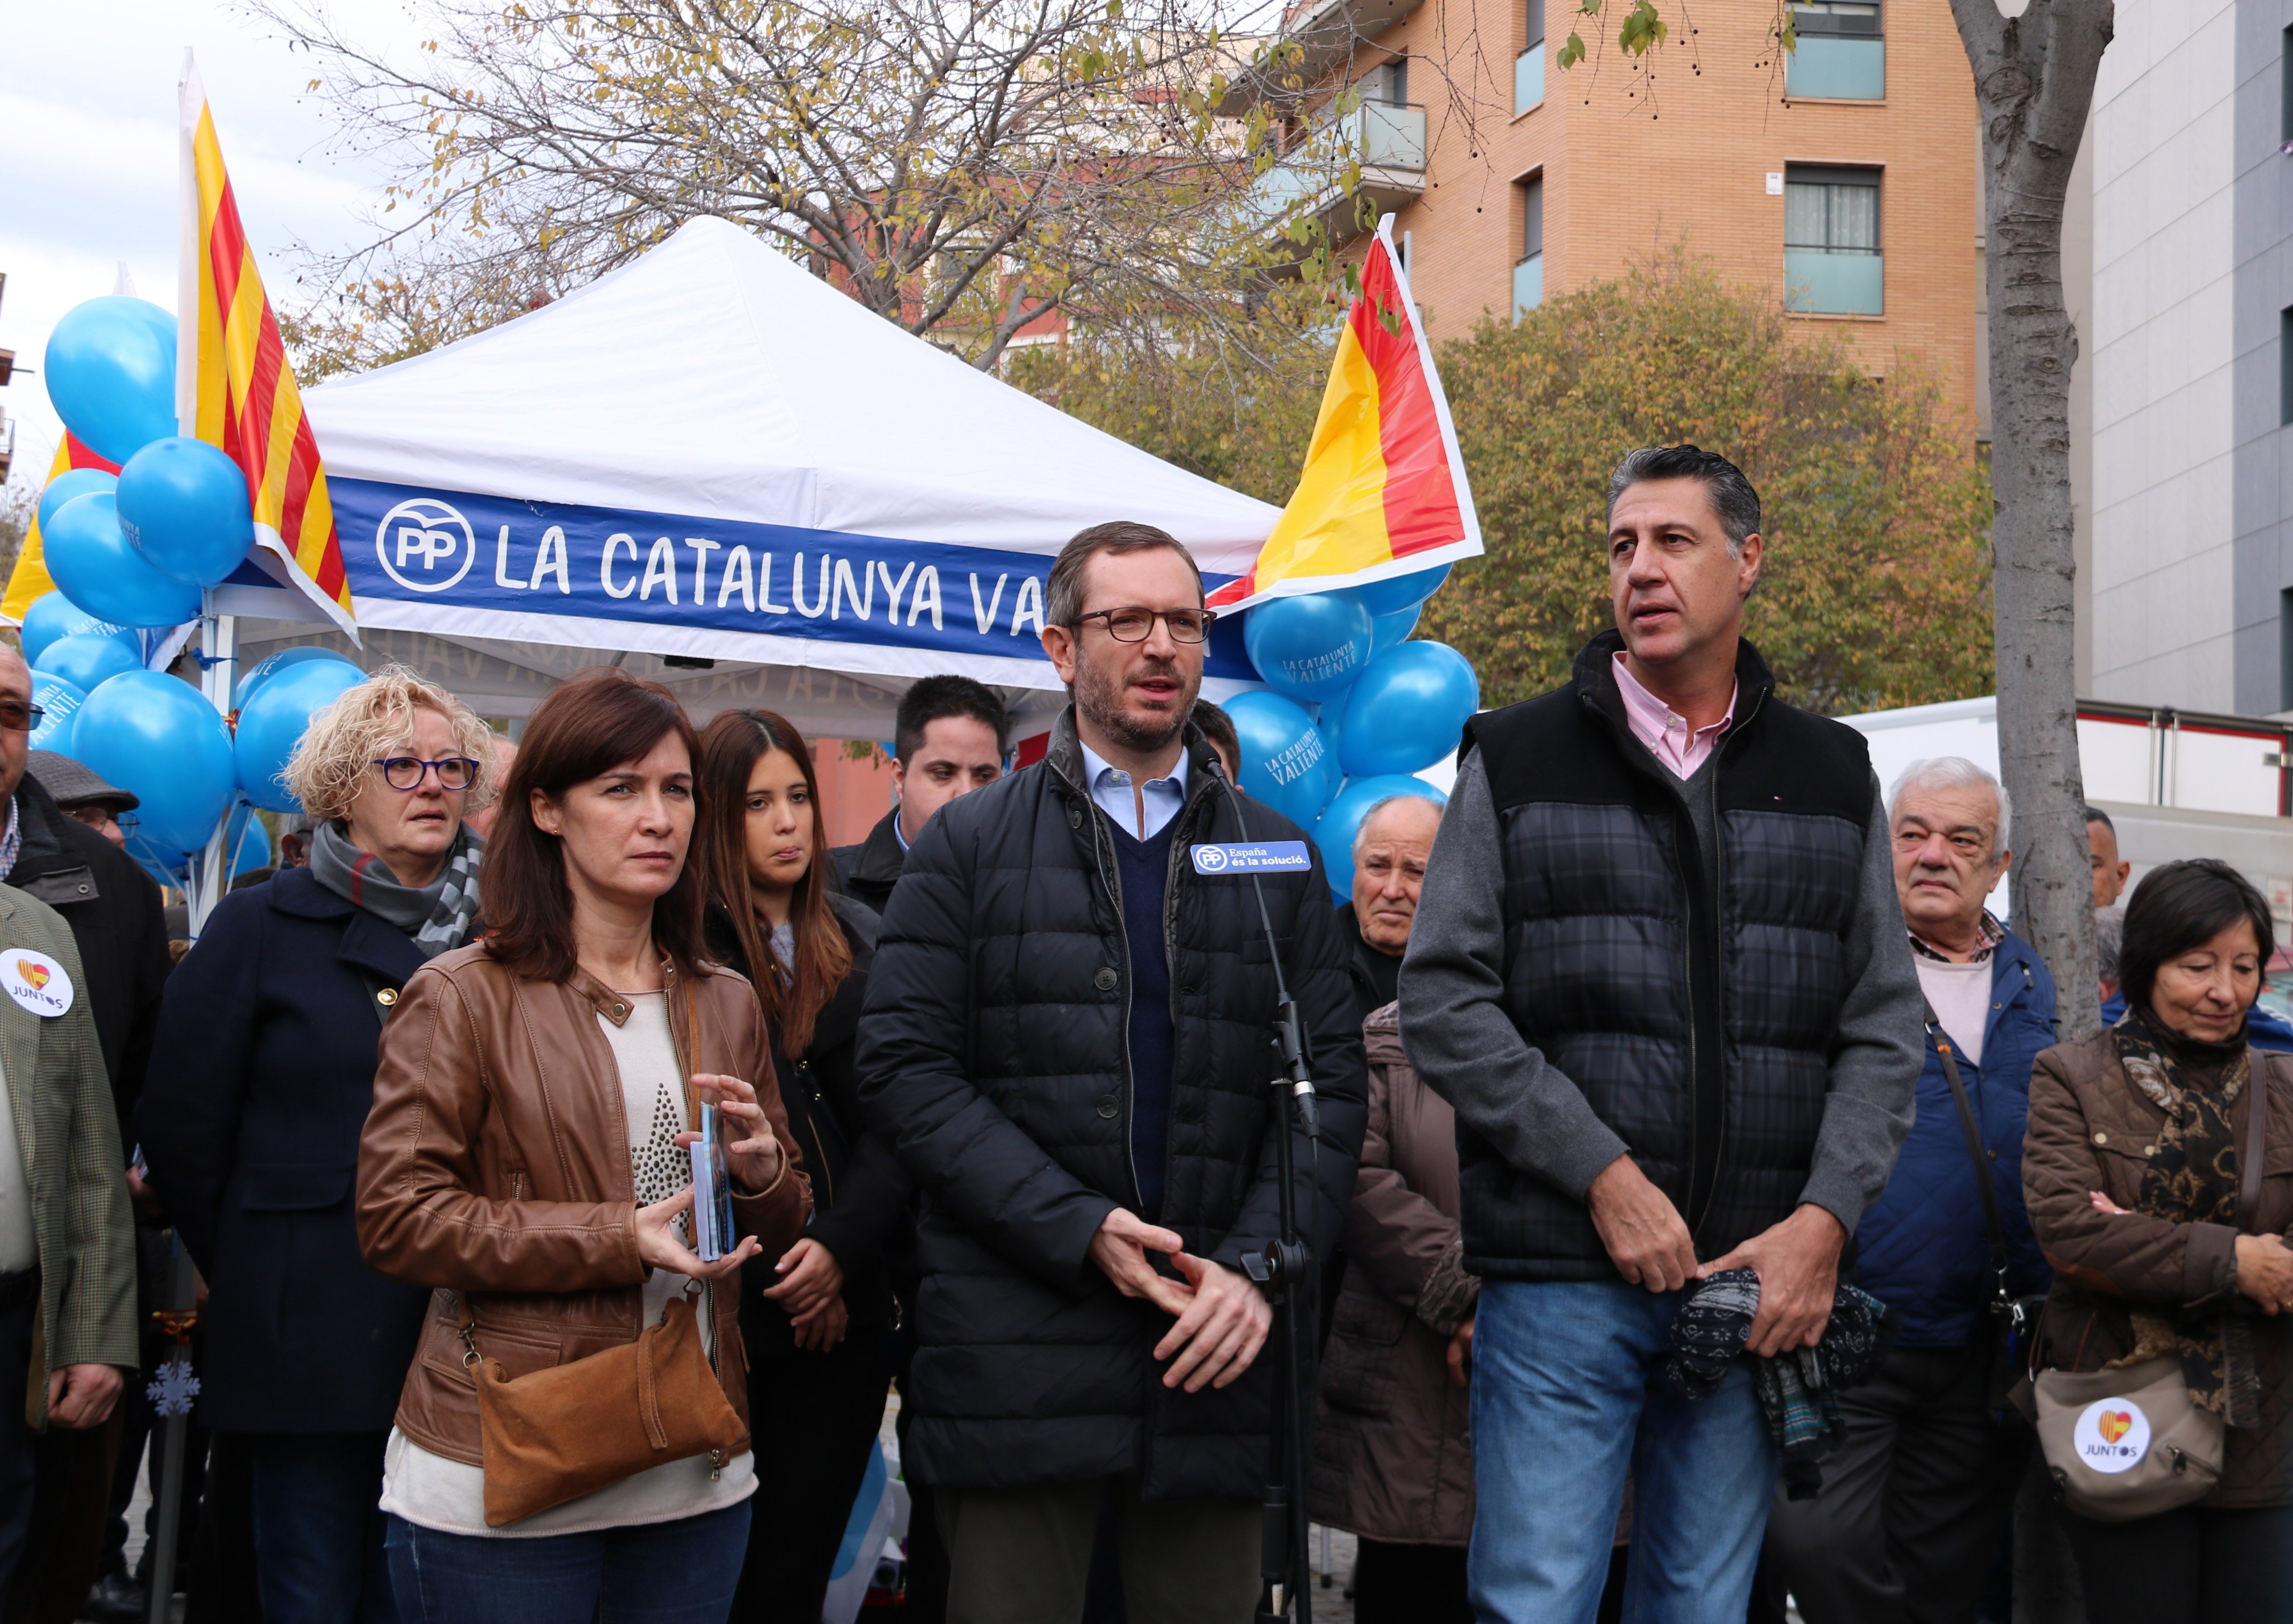 El PP presiona al PSOE a aprobar los presupuestos a cambio de no haber intervenido TV3